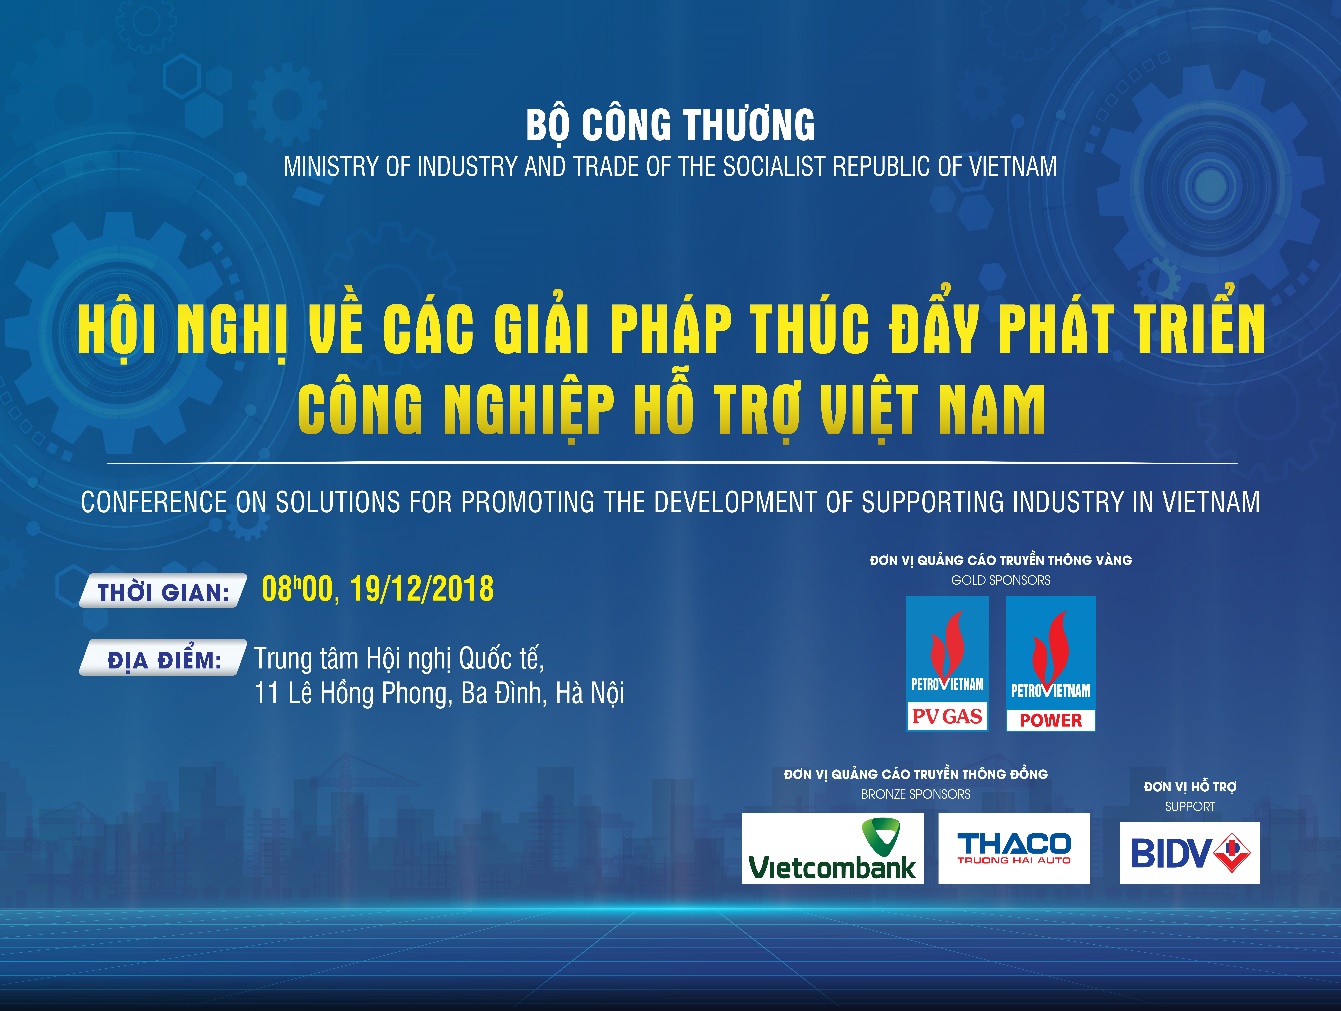 Hội nghị về các giải pháp thúc đẩy phát triển CNHT Việt Nam. Hội nghị sẽ được tổ chức vào ngày 19/ 12/2018 